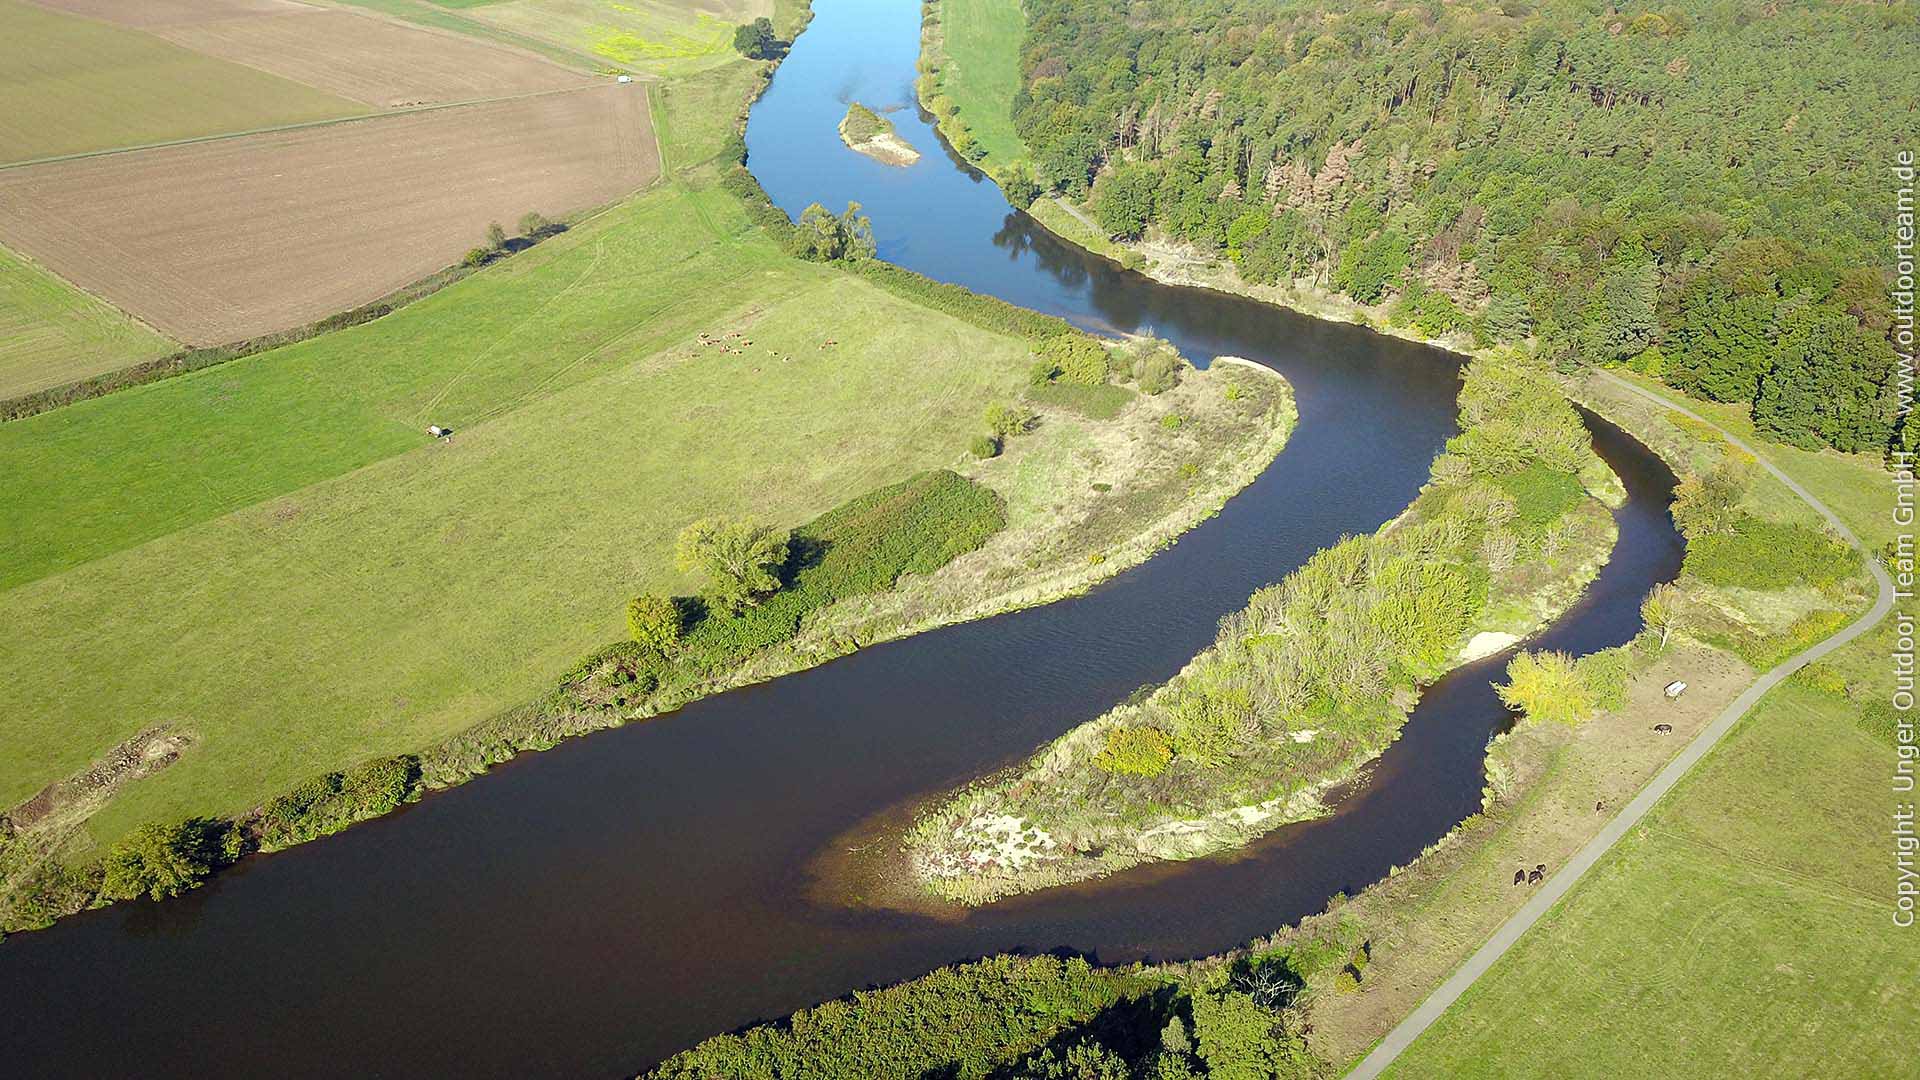 Luftbild vom Mulde-Fluss: die großen Kiesinselen nahe der Steinklippen (Felsen) - wunderschöne Flusslandschaften inmitten von Sachsen!